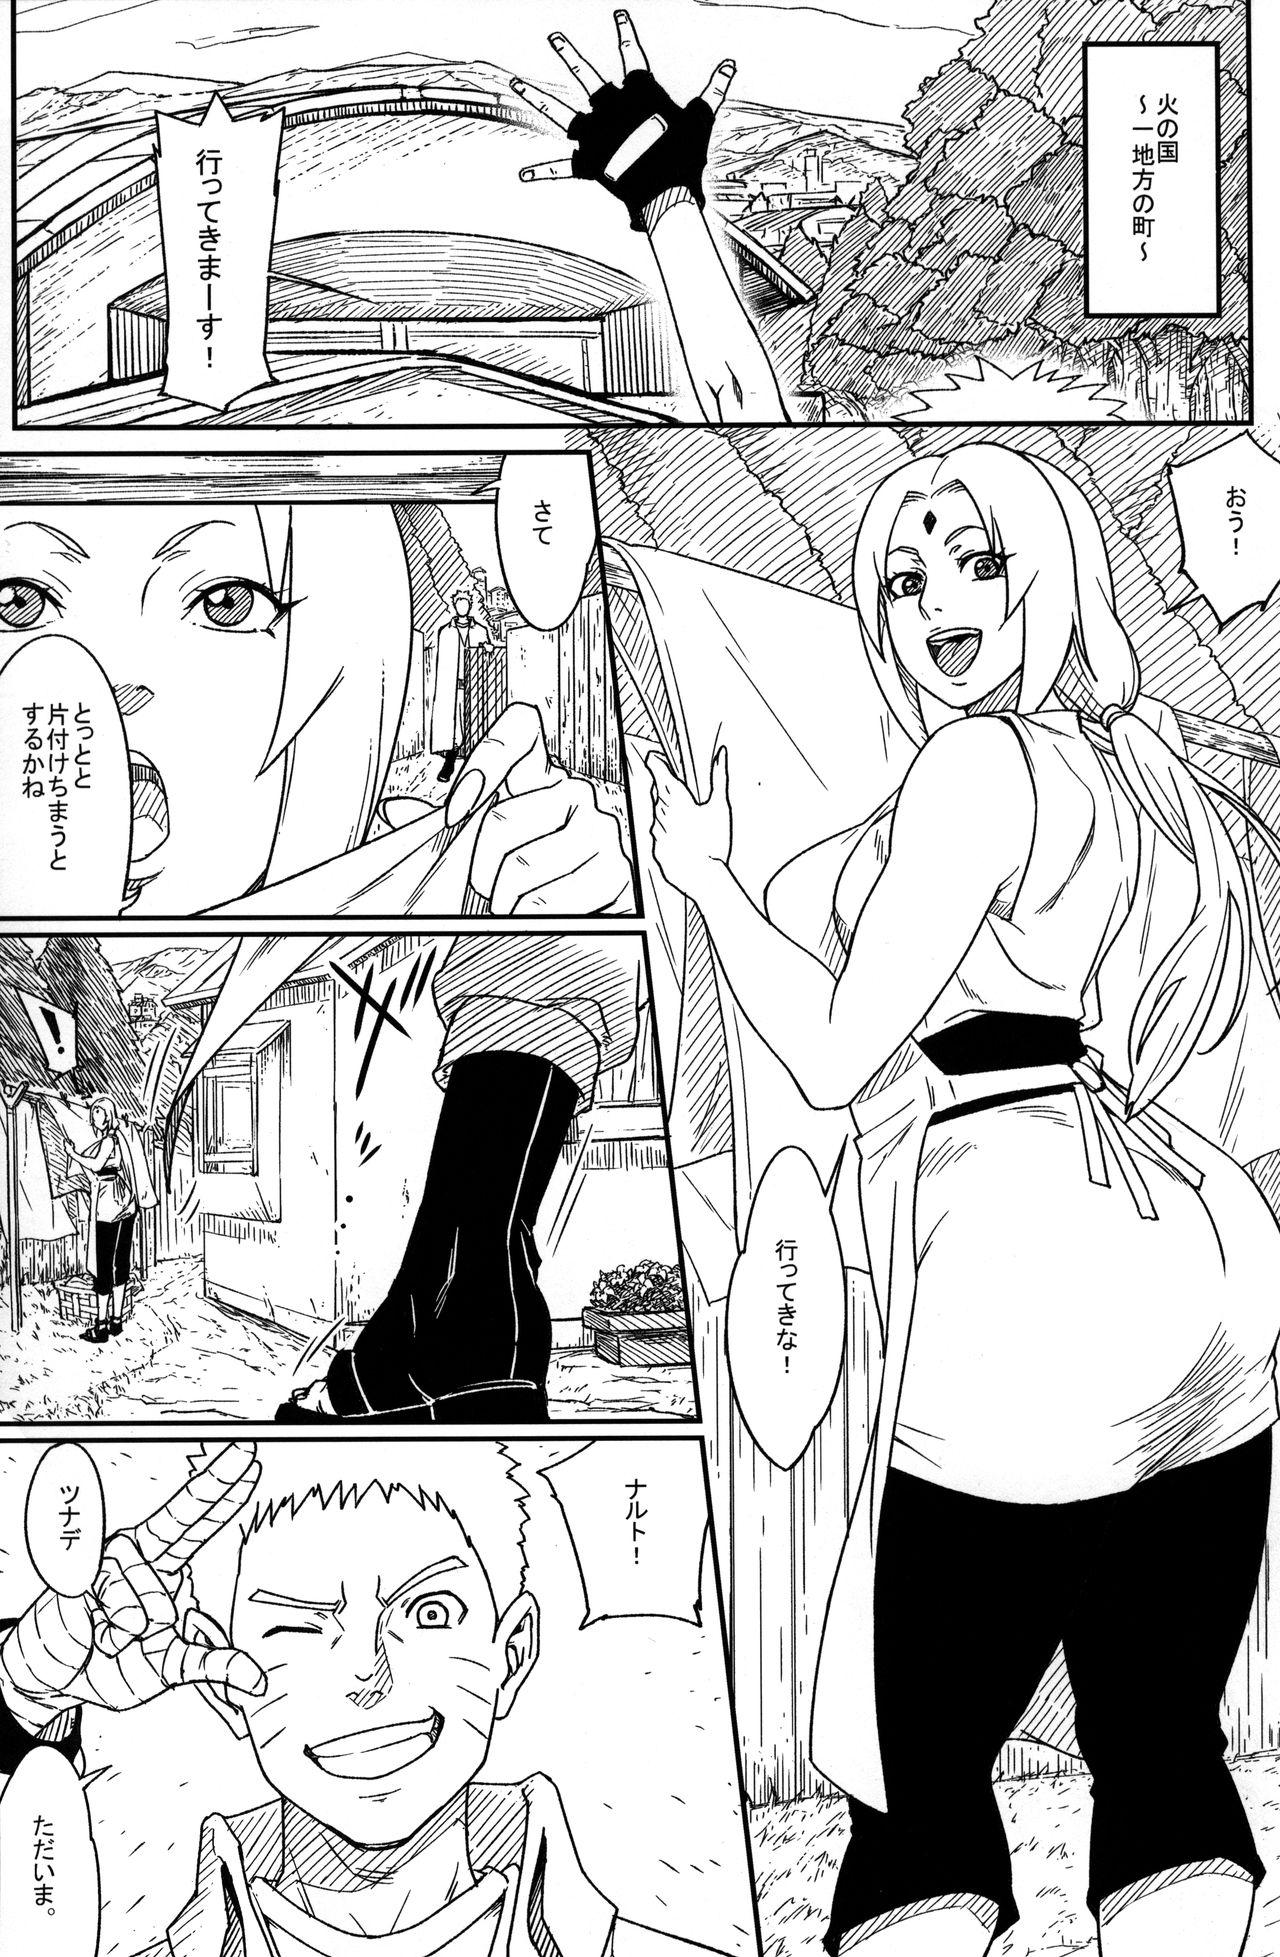 Hiddencam Jukumitsuki Intouden 3 Jou - Naruto Italiano - Page 3